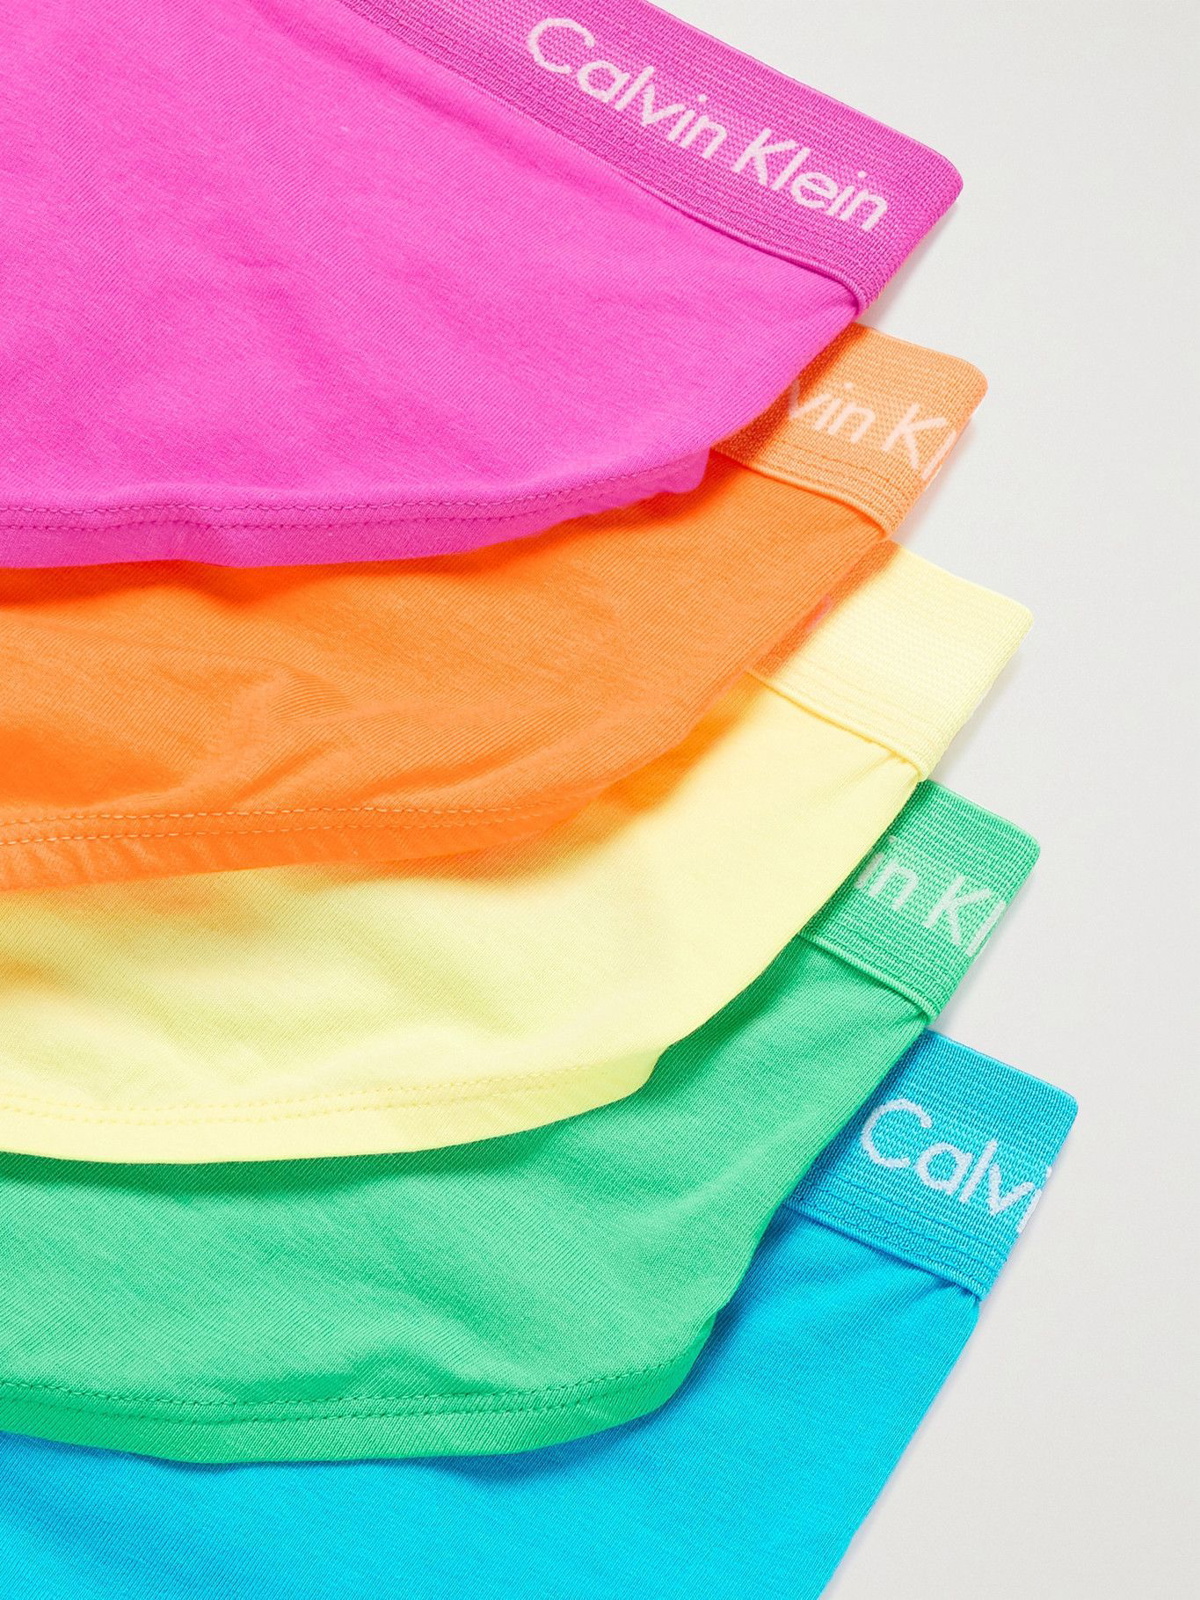 CALVIN KLEIN UNDERWEAR - The Pride Edit Five-Pack Stretch-Cotton Briefs -  Multi Calvin Klein Underwear